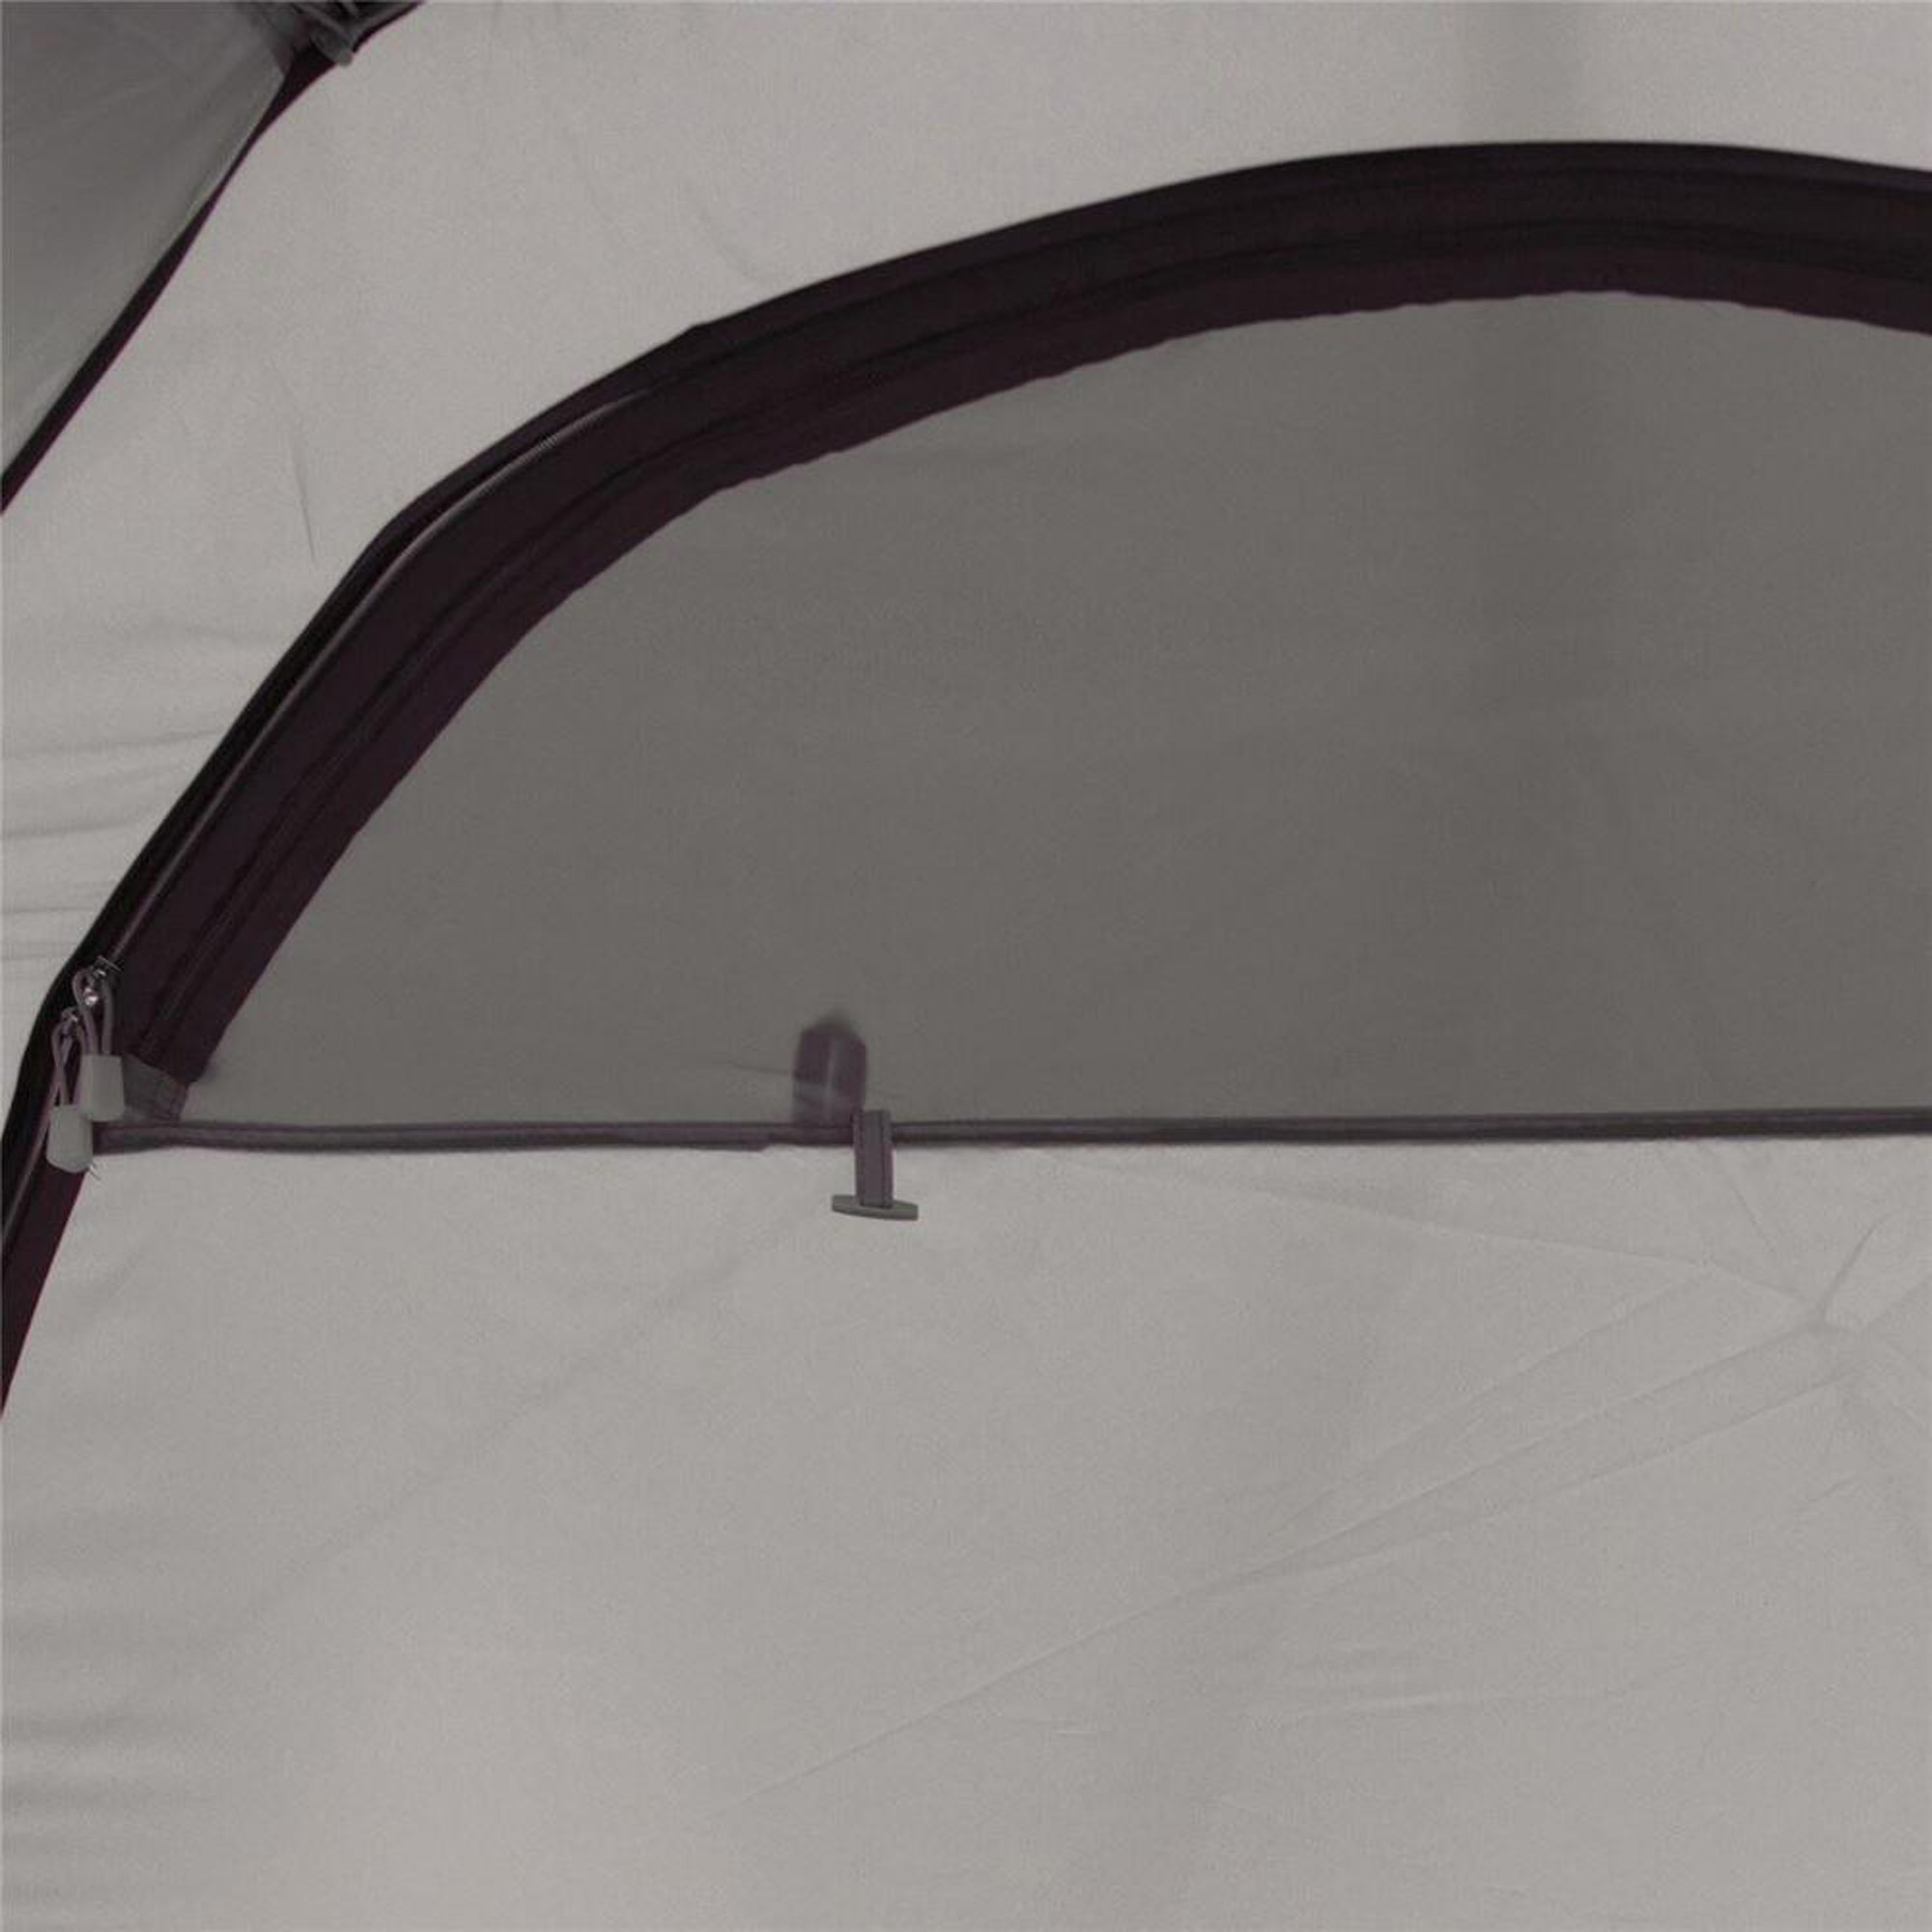 Robens Arch 2 Lightweight Trekking Tent